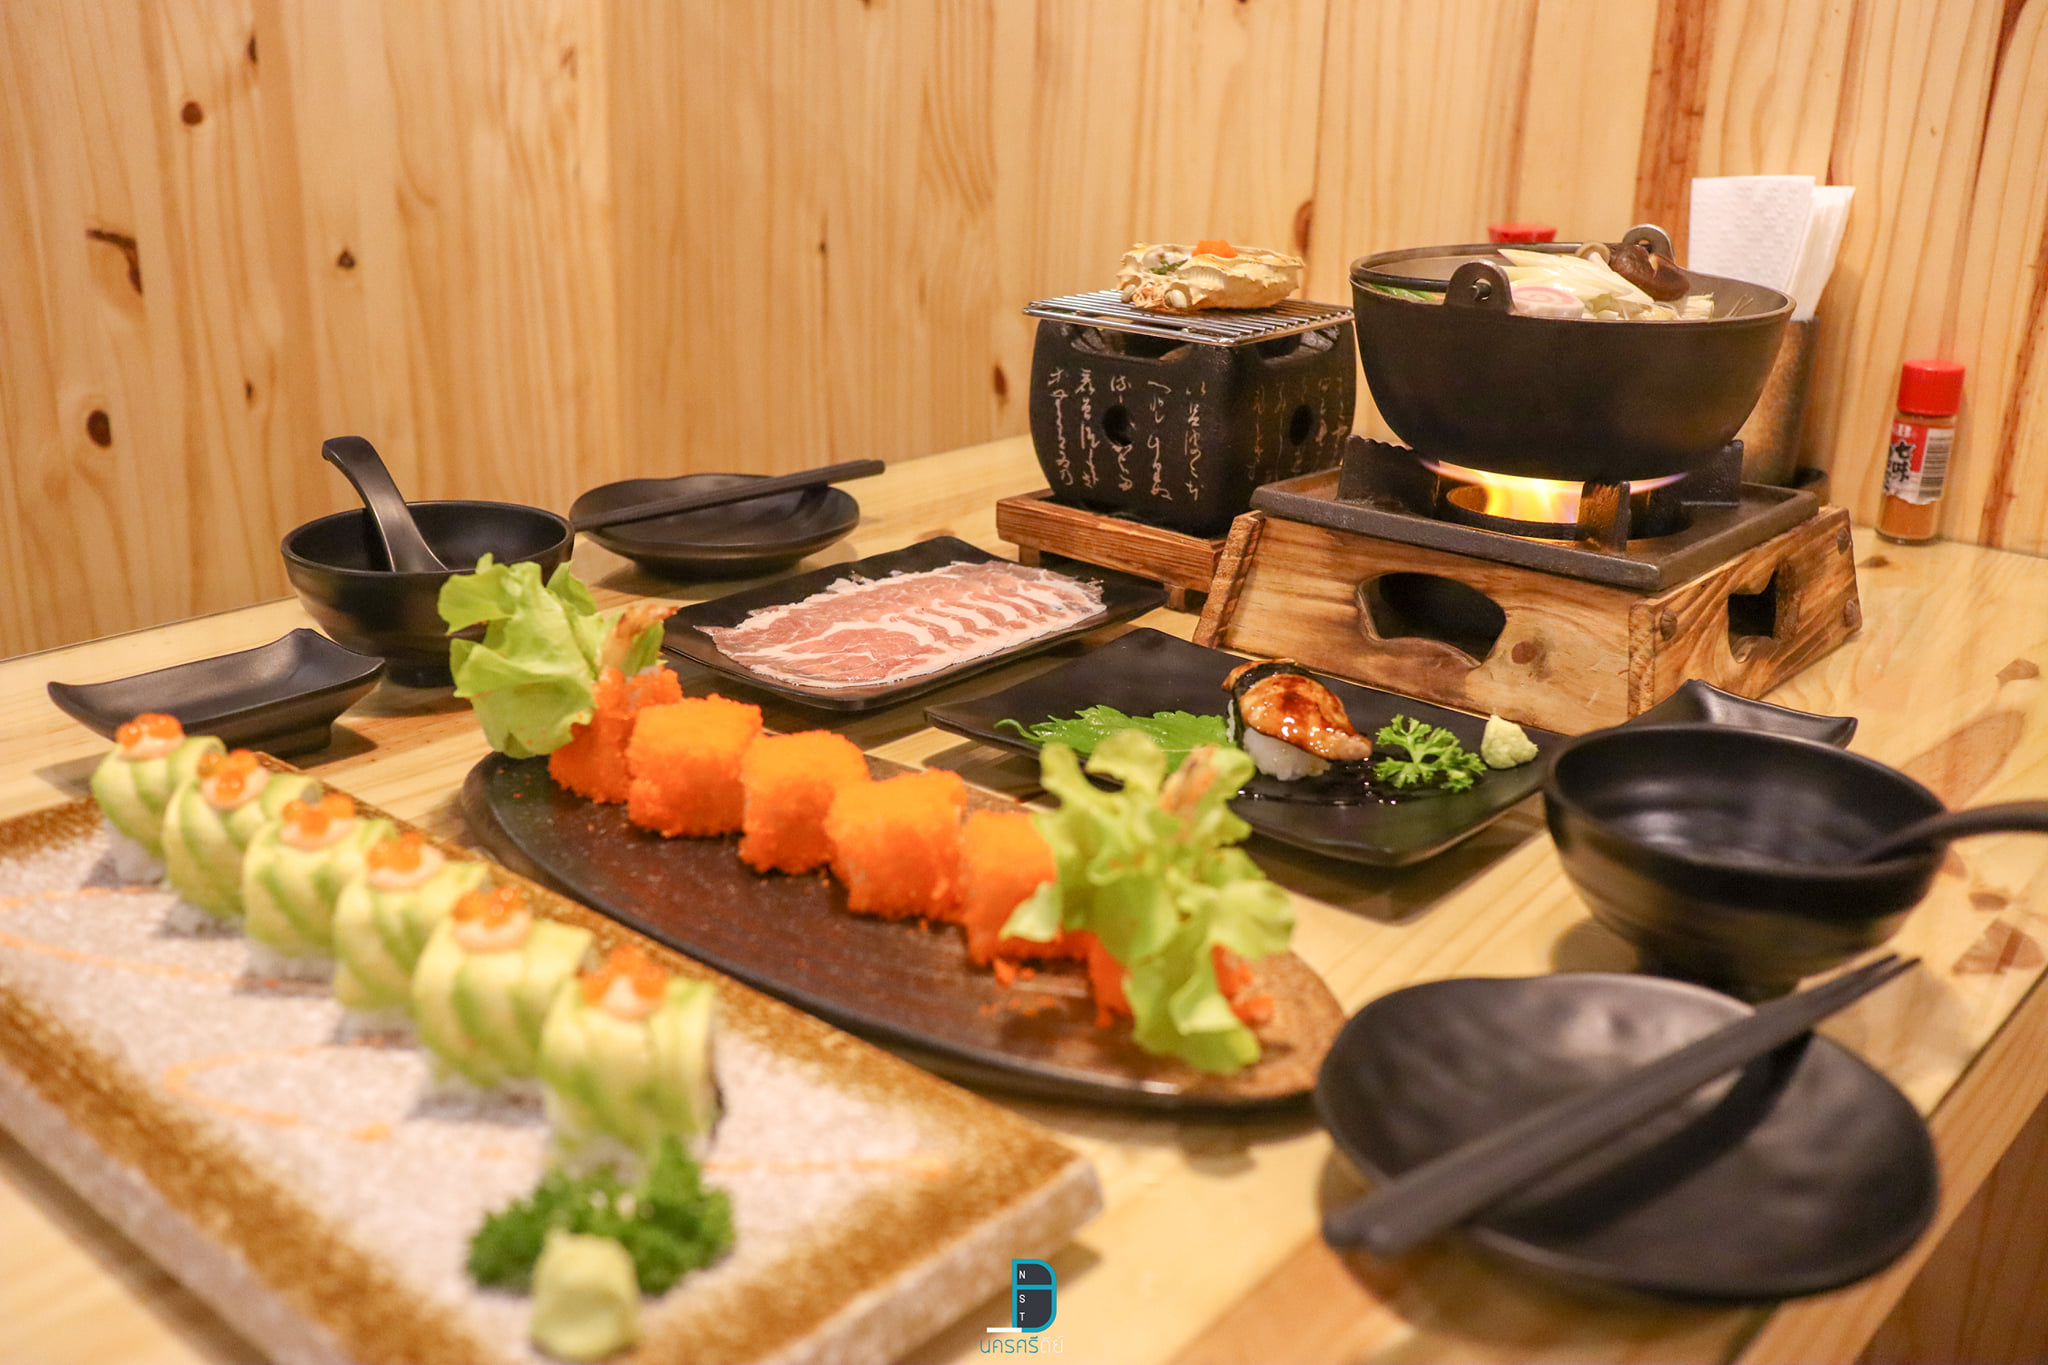   ร้านอาหารญี่ปุ่น,นครศรี,ของกิน,ซูชิ,แซลม่อนซาซิมิ,อร่อย